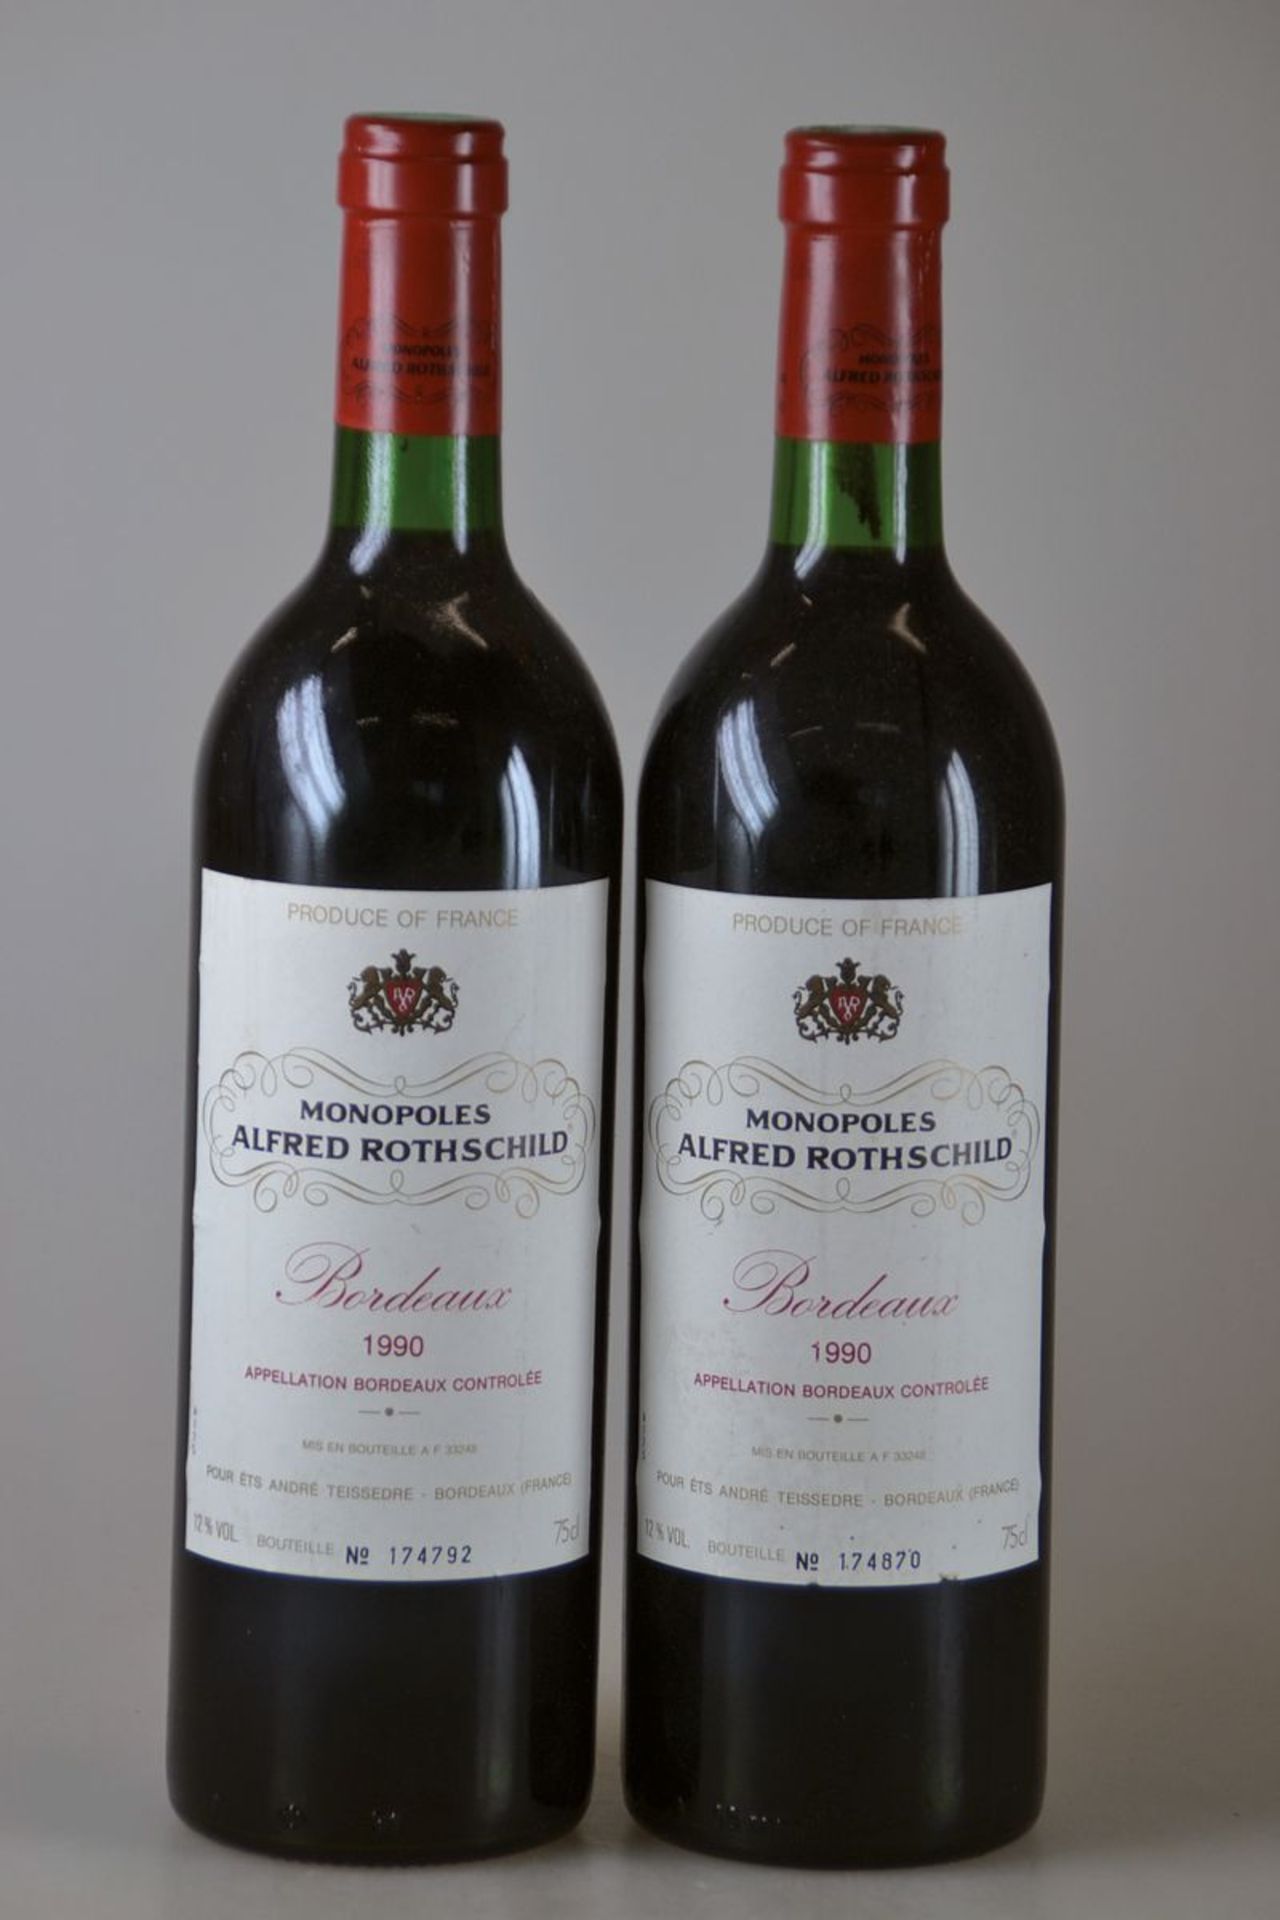 6 Flaschen 1990 Monopoles Alfred Rothschild, Bordeaux, je